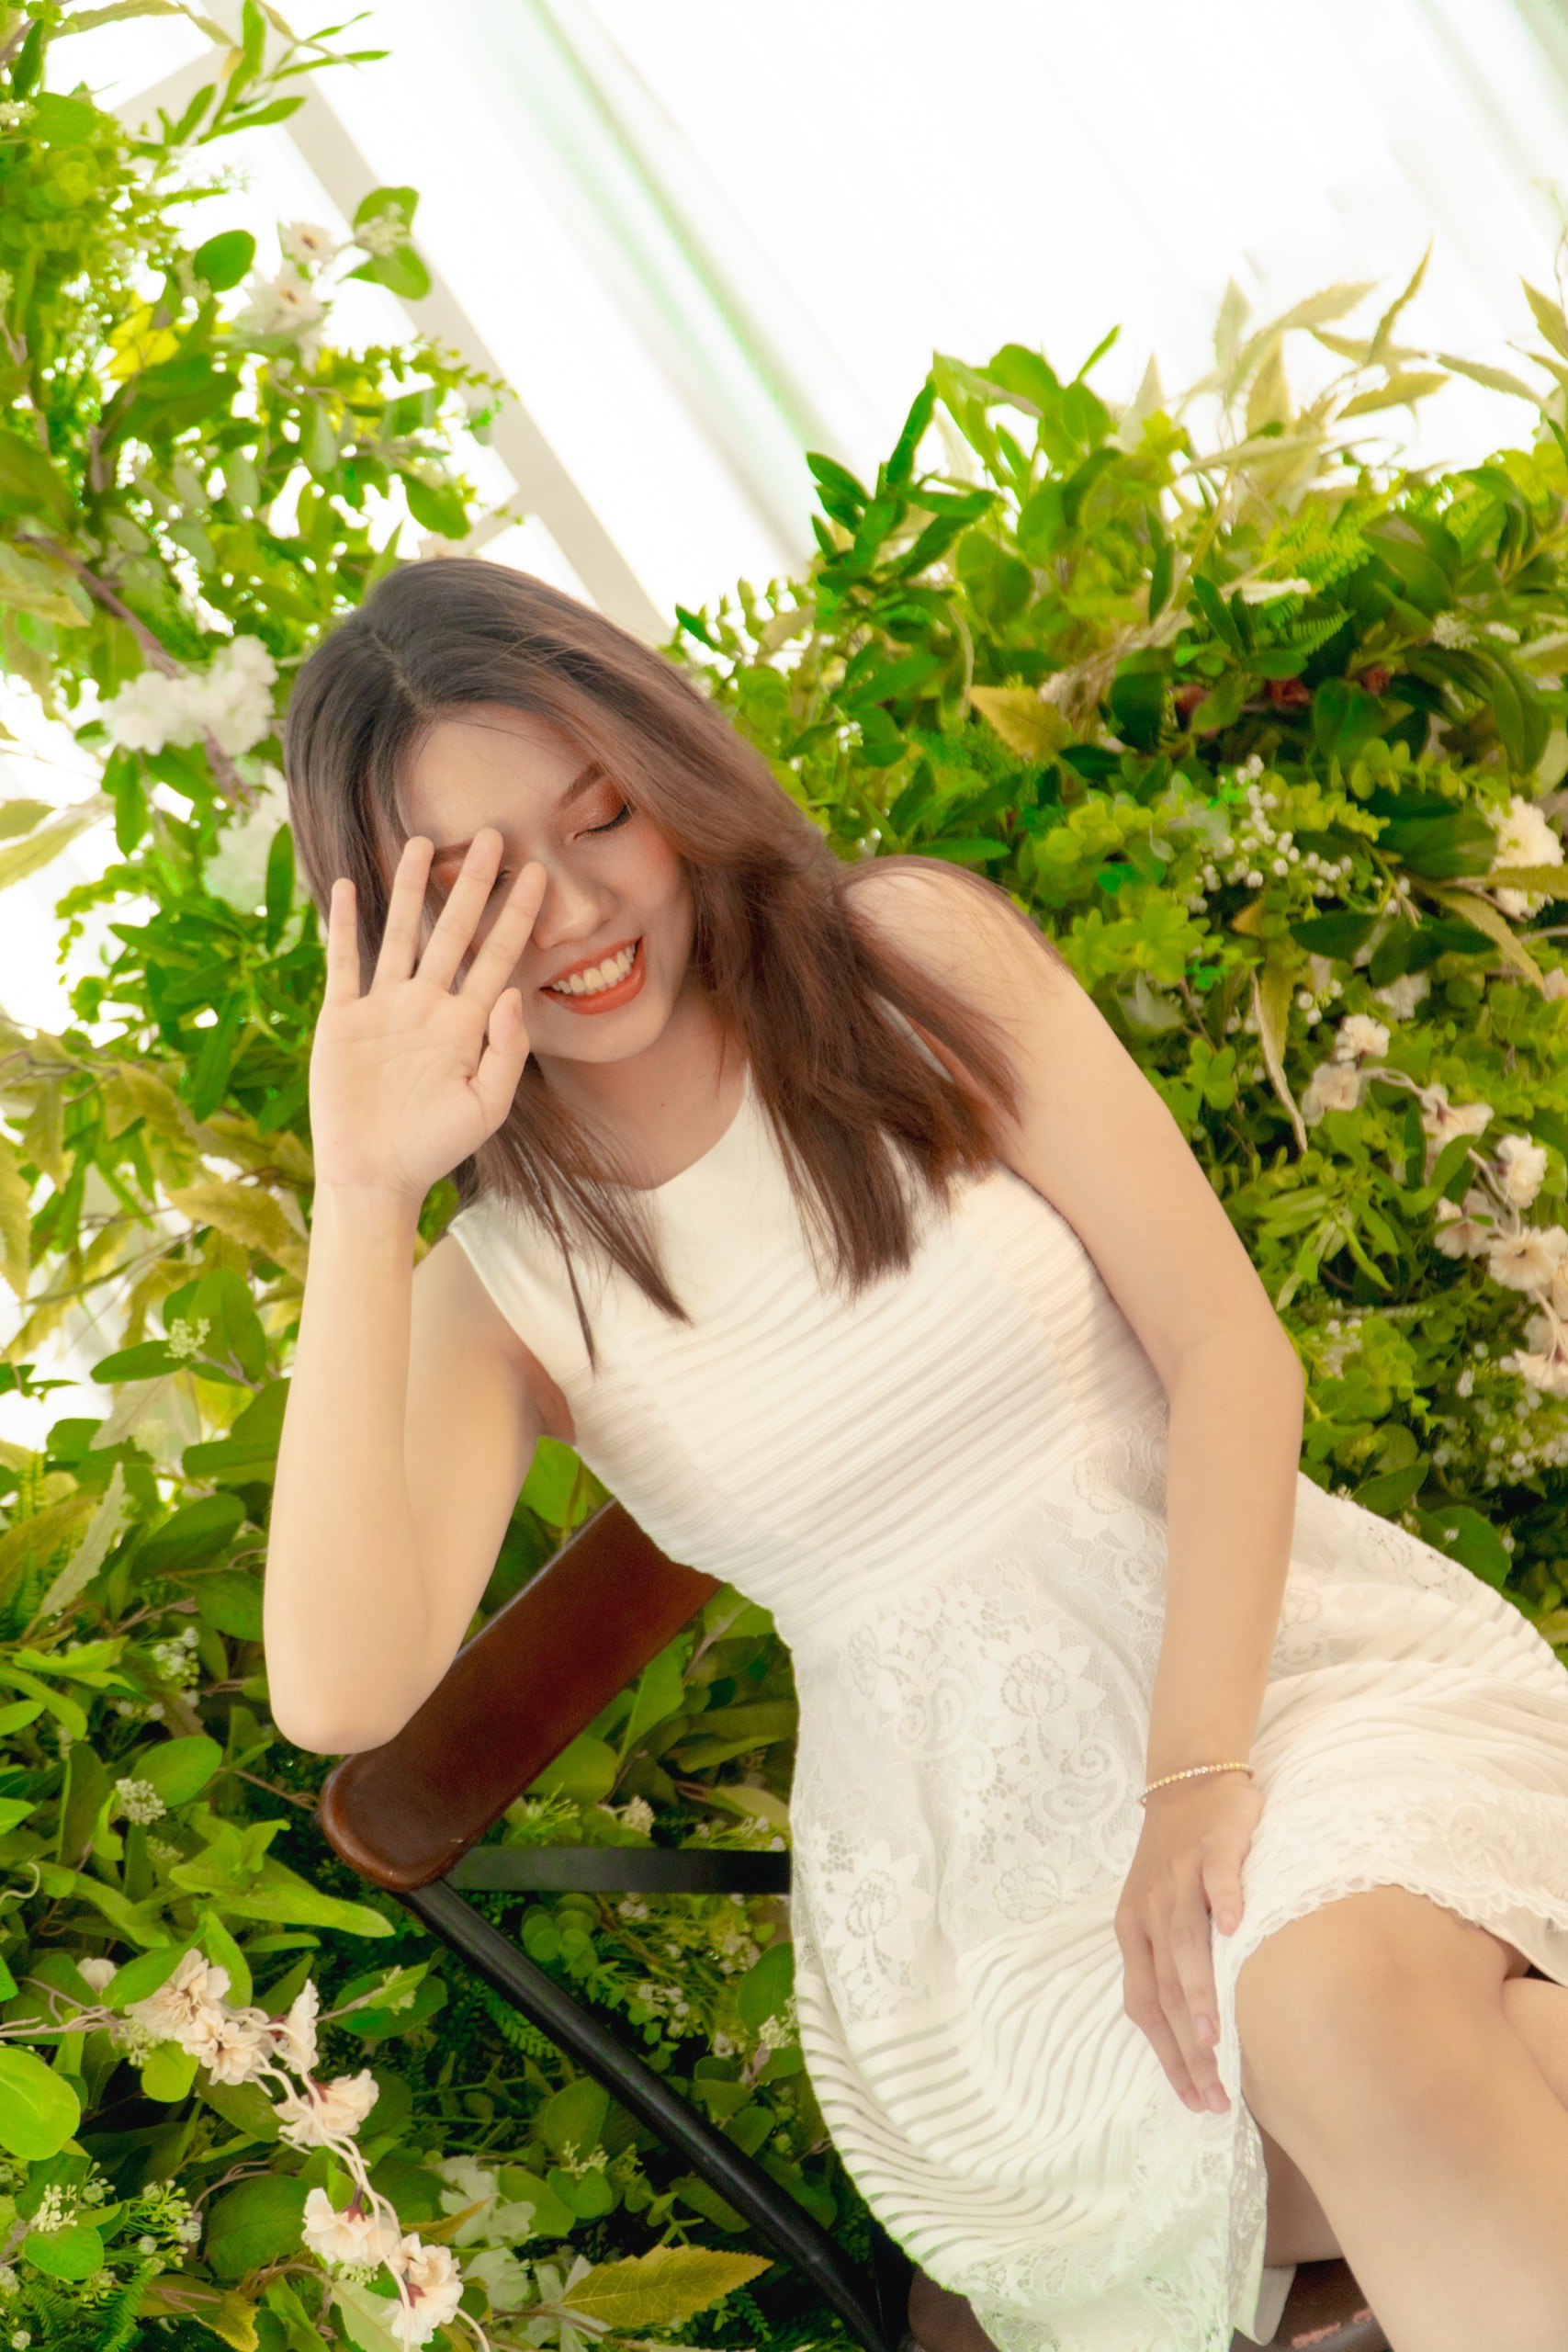 Yến Linh Trần - Nữ sinh sở hữu vẻ ngoài ngọt ngào và giấc mơ trở thành người mẫu